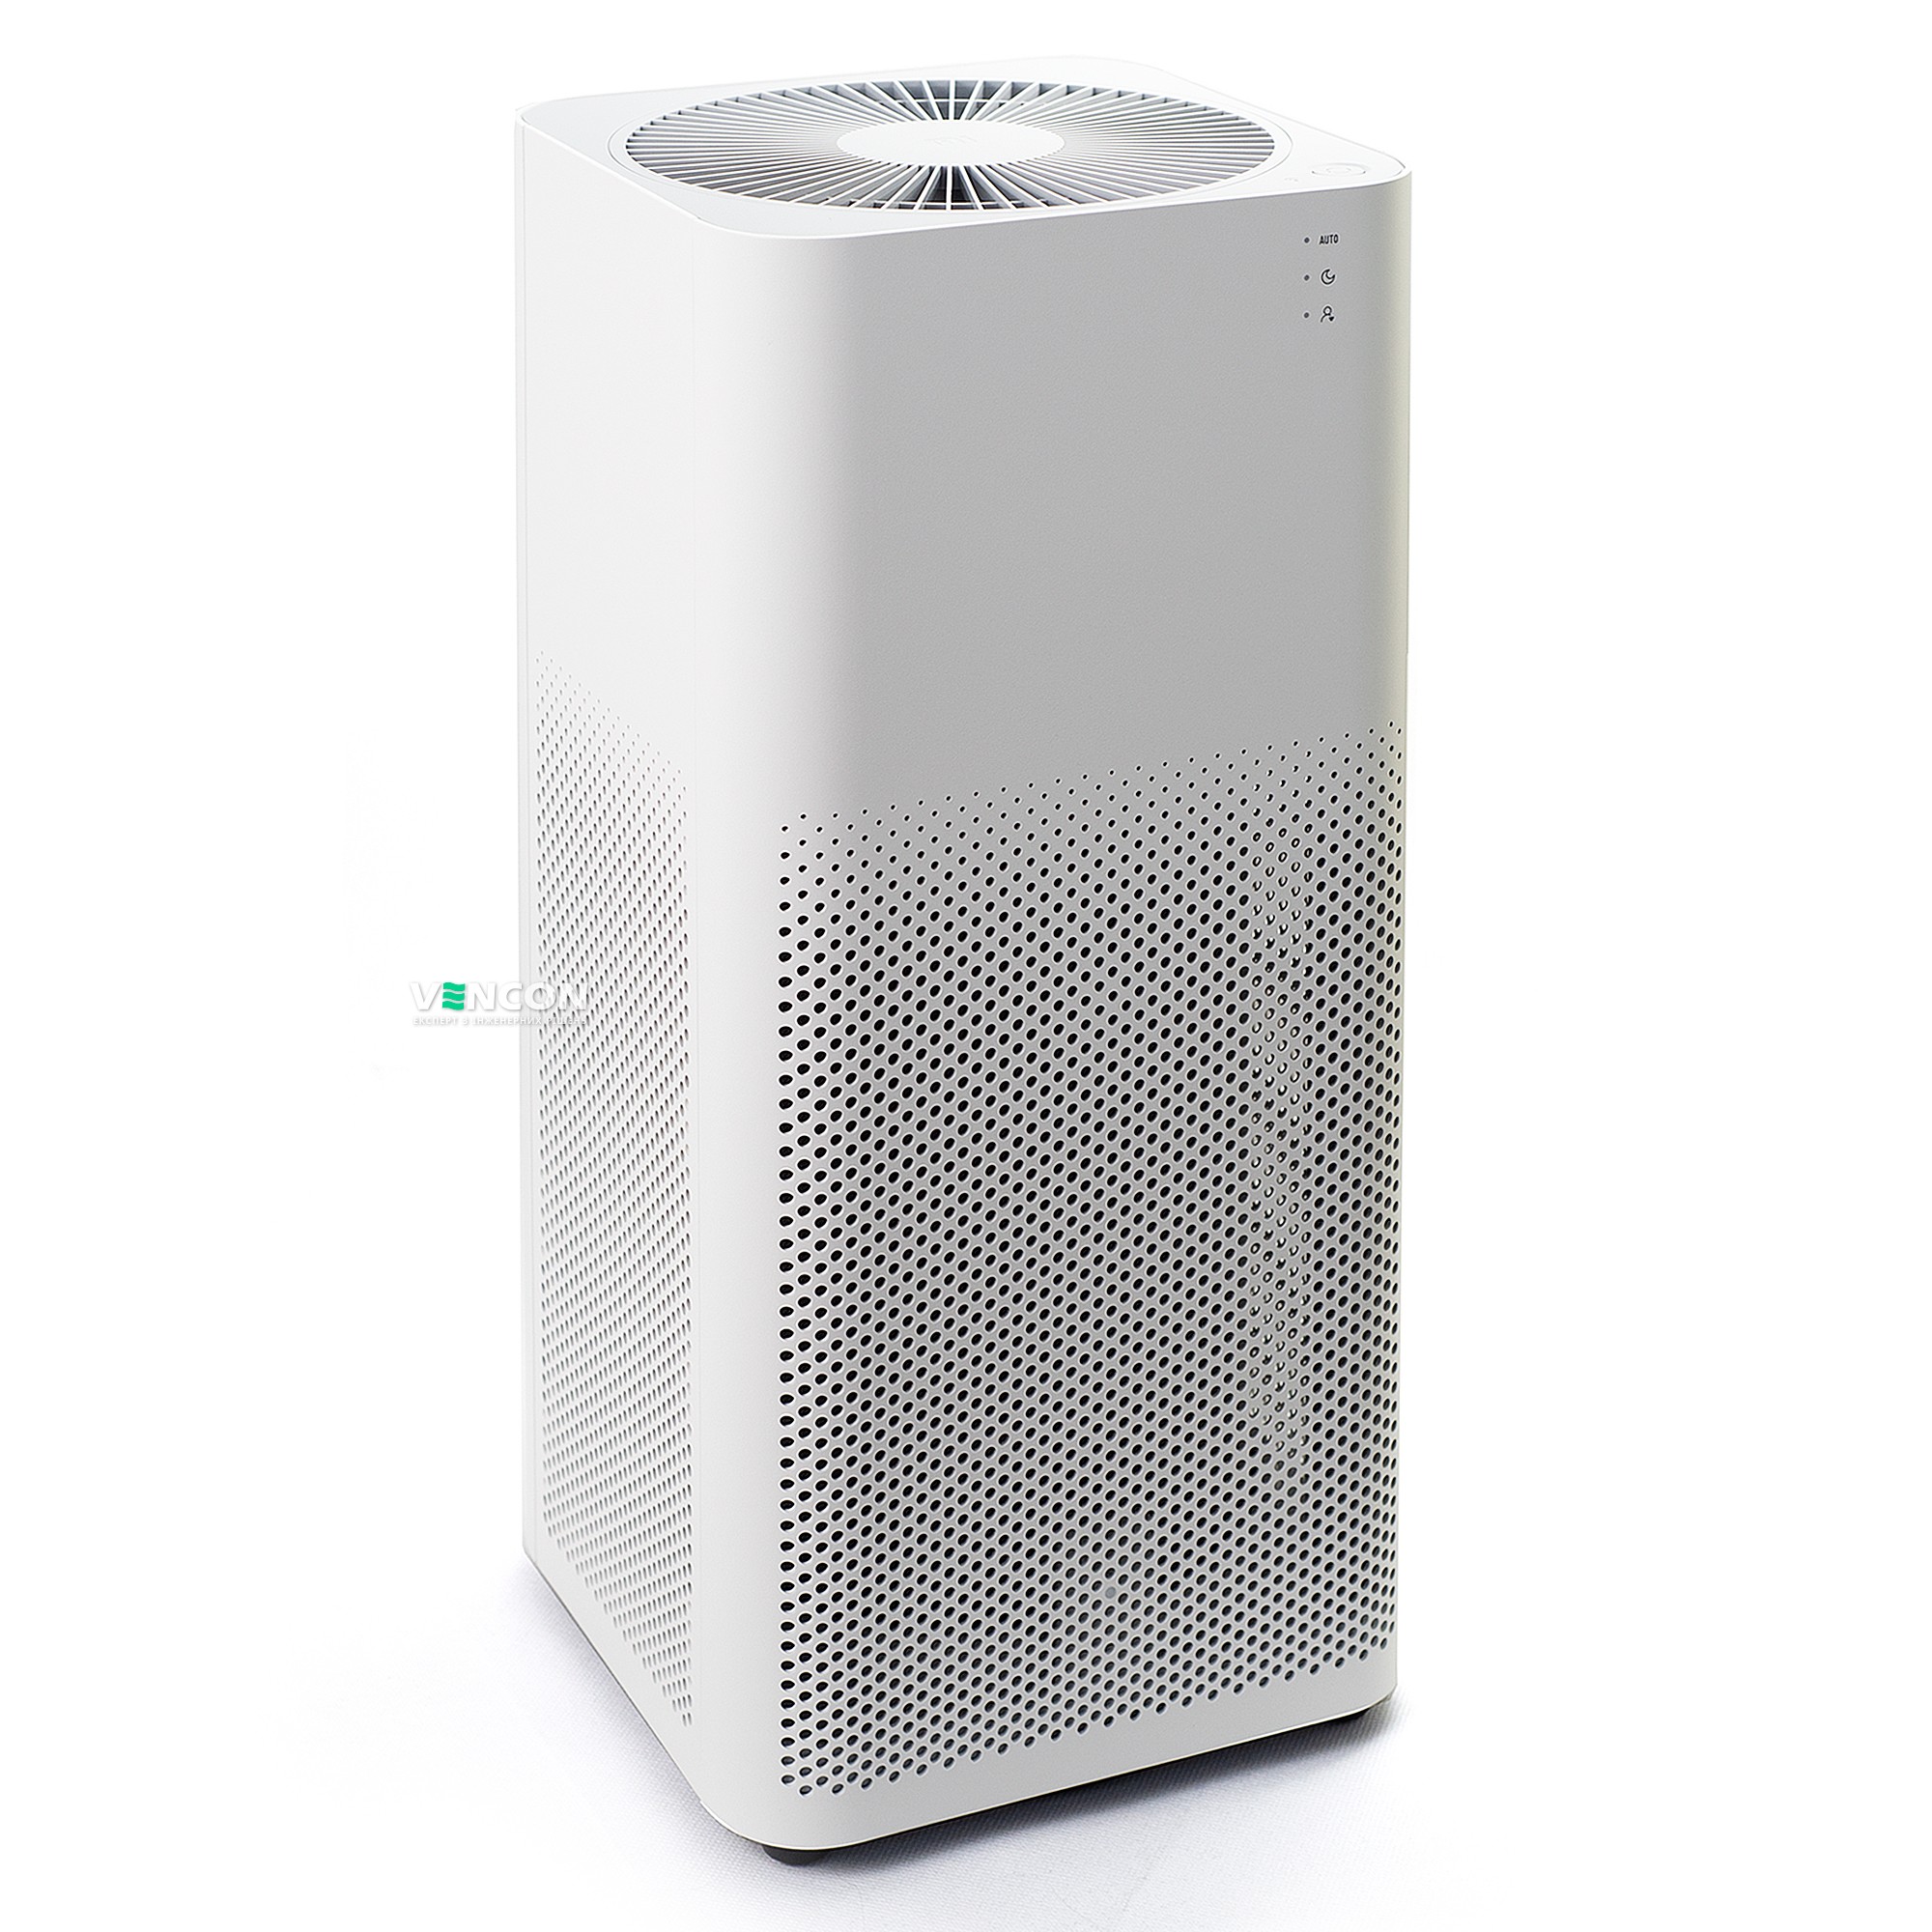 Характеристики очиститель воздуха xiaomi с hepa фильтром Xiaomi SmartMi Air Purifier 2H White (FJY4026GL)